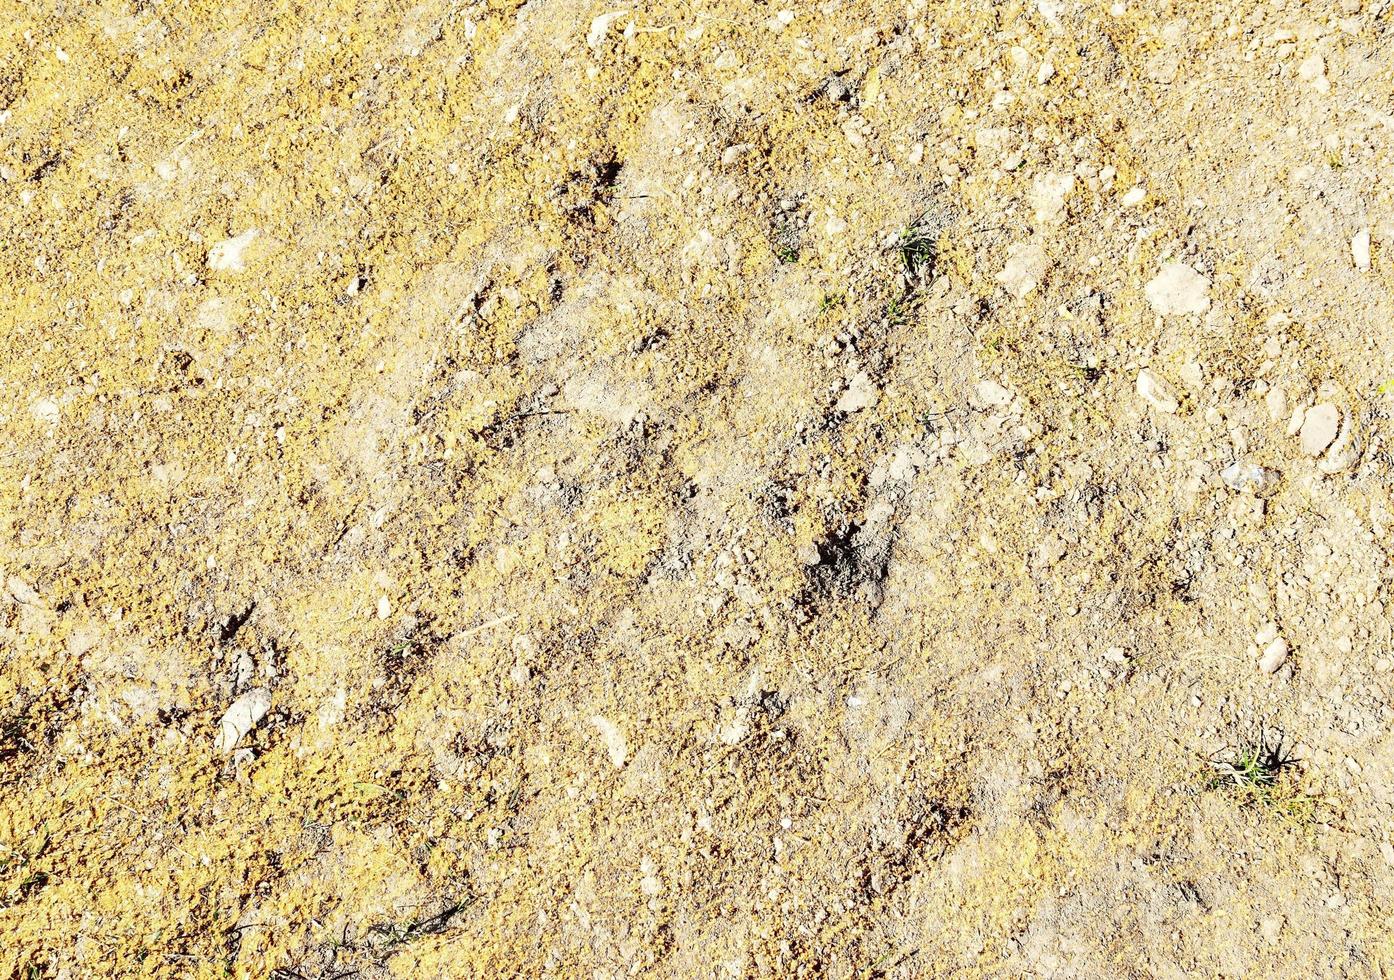 detaillierte nahaufnahme auf einer braunen sandgrundstruktur foto